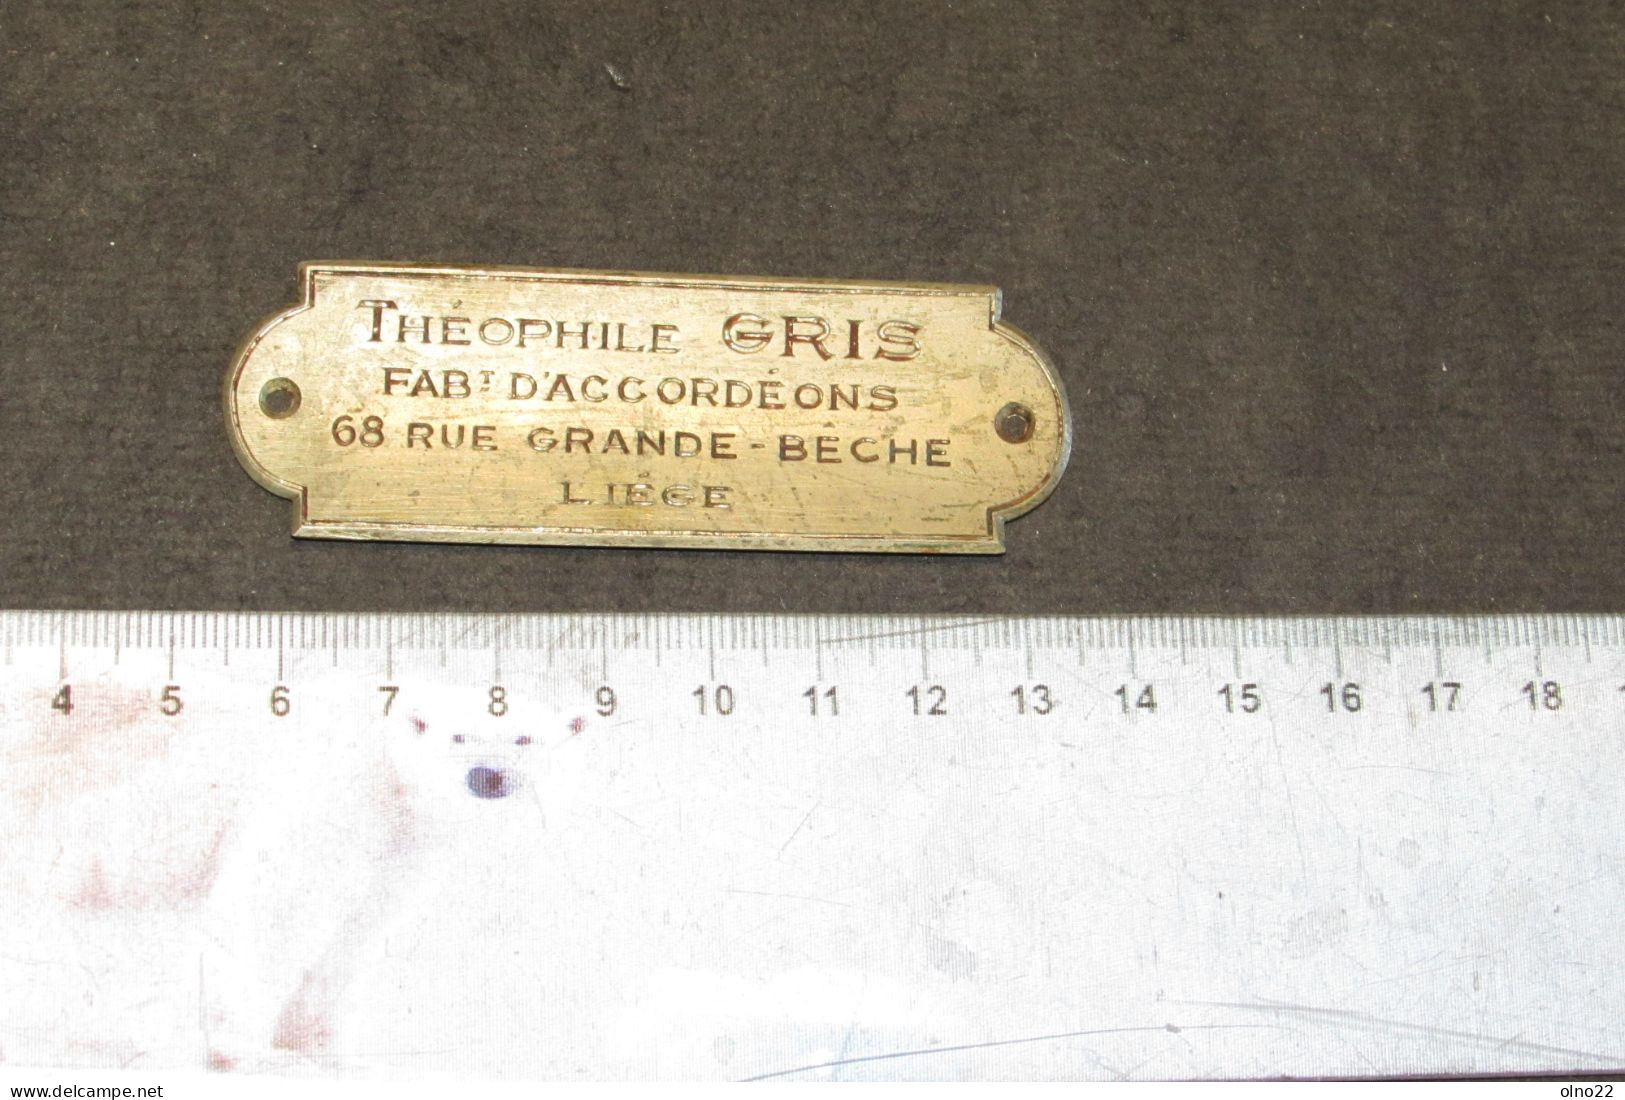 THEOPHILE GRIS - FABt. D'ACCORDEONS 68 RUE GRANDE BECHE LIEGE - PLAQUETTE PUBLICITAIRE DE FABRICANT  - VOIR SCANS - Musikinstrumente